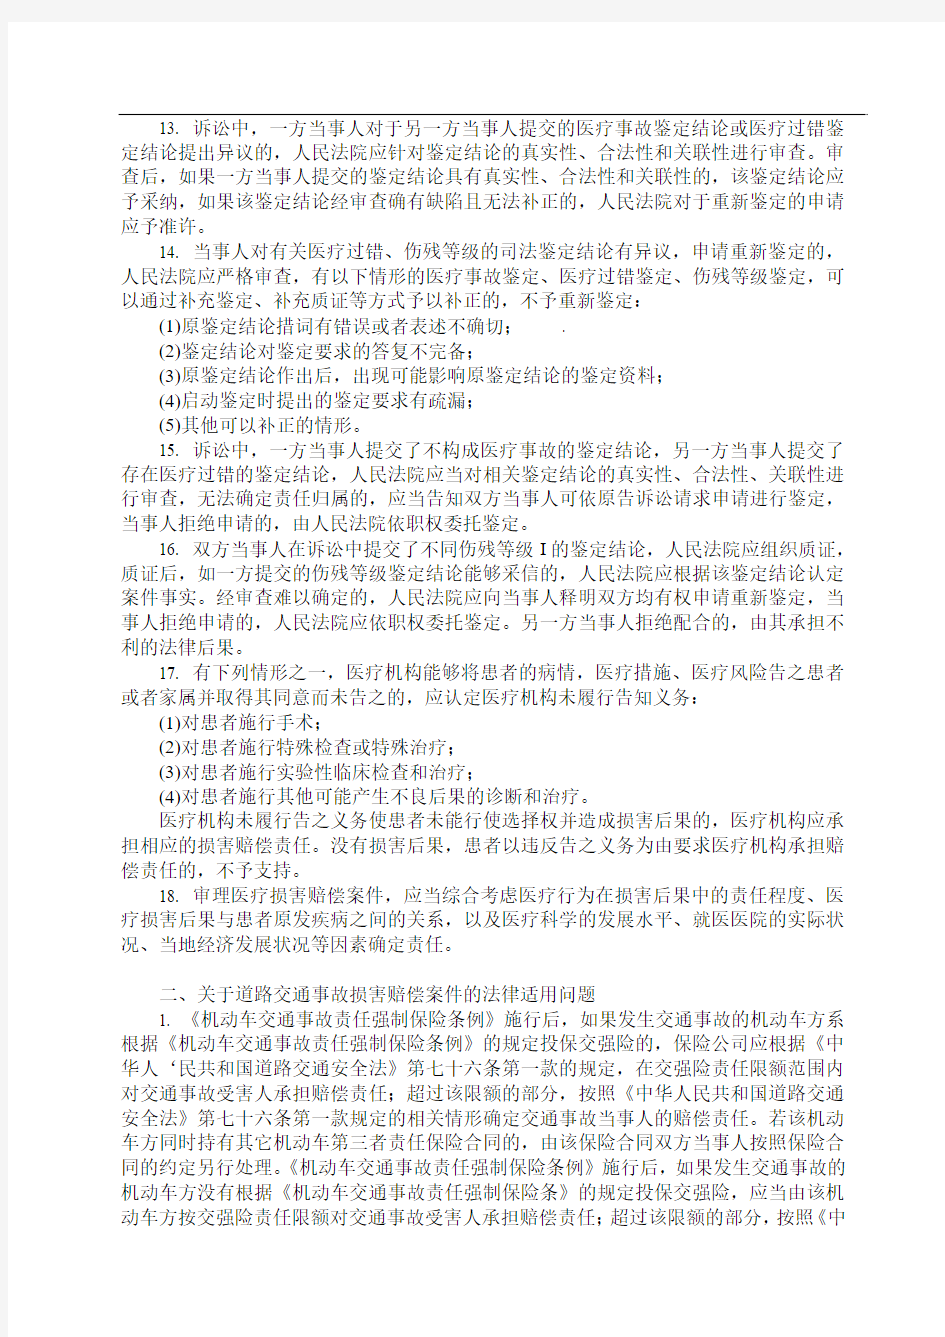 云南省高级人民法院关于审理人身损害赔偿案件若干问题的会议纪要